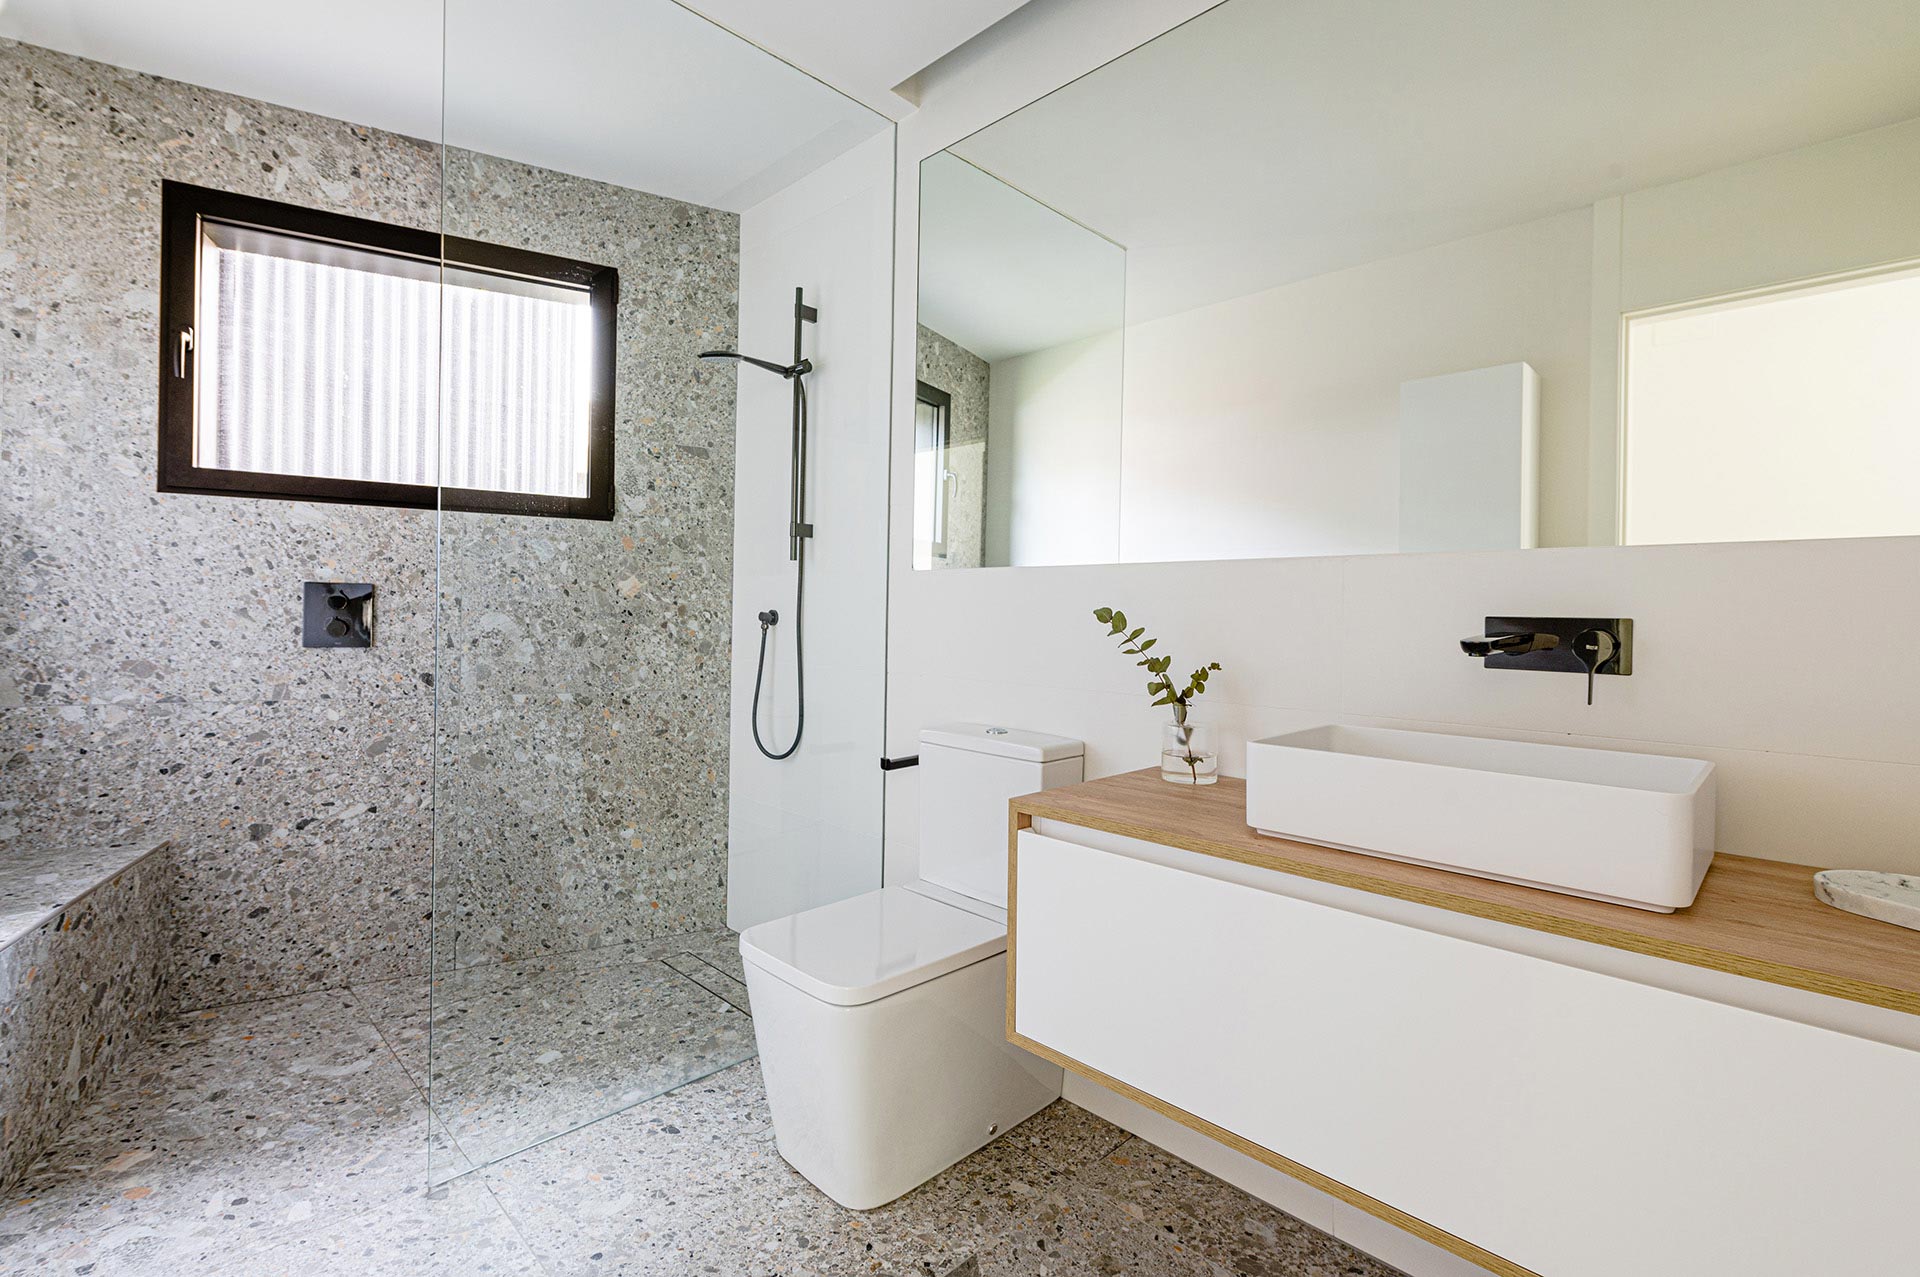 Diseño interior de baño madera gris y blanco por Moah Arquitectos en Suesa. Cantabria.